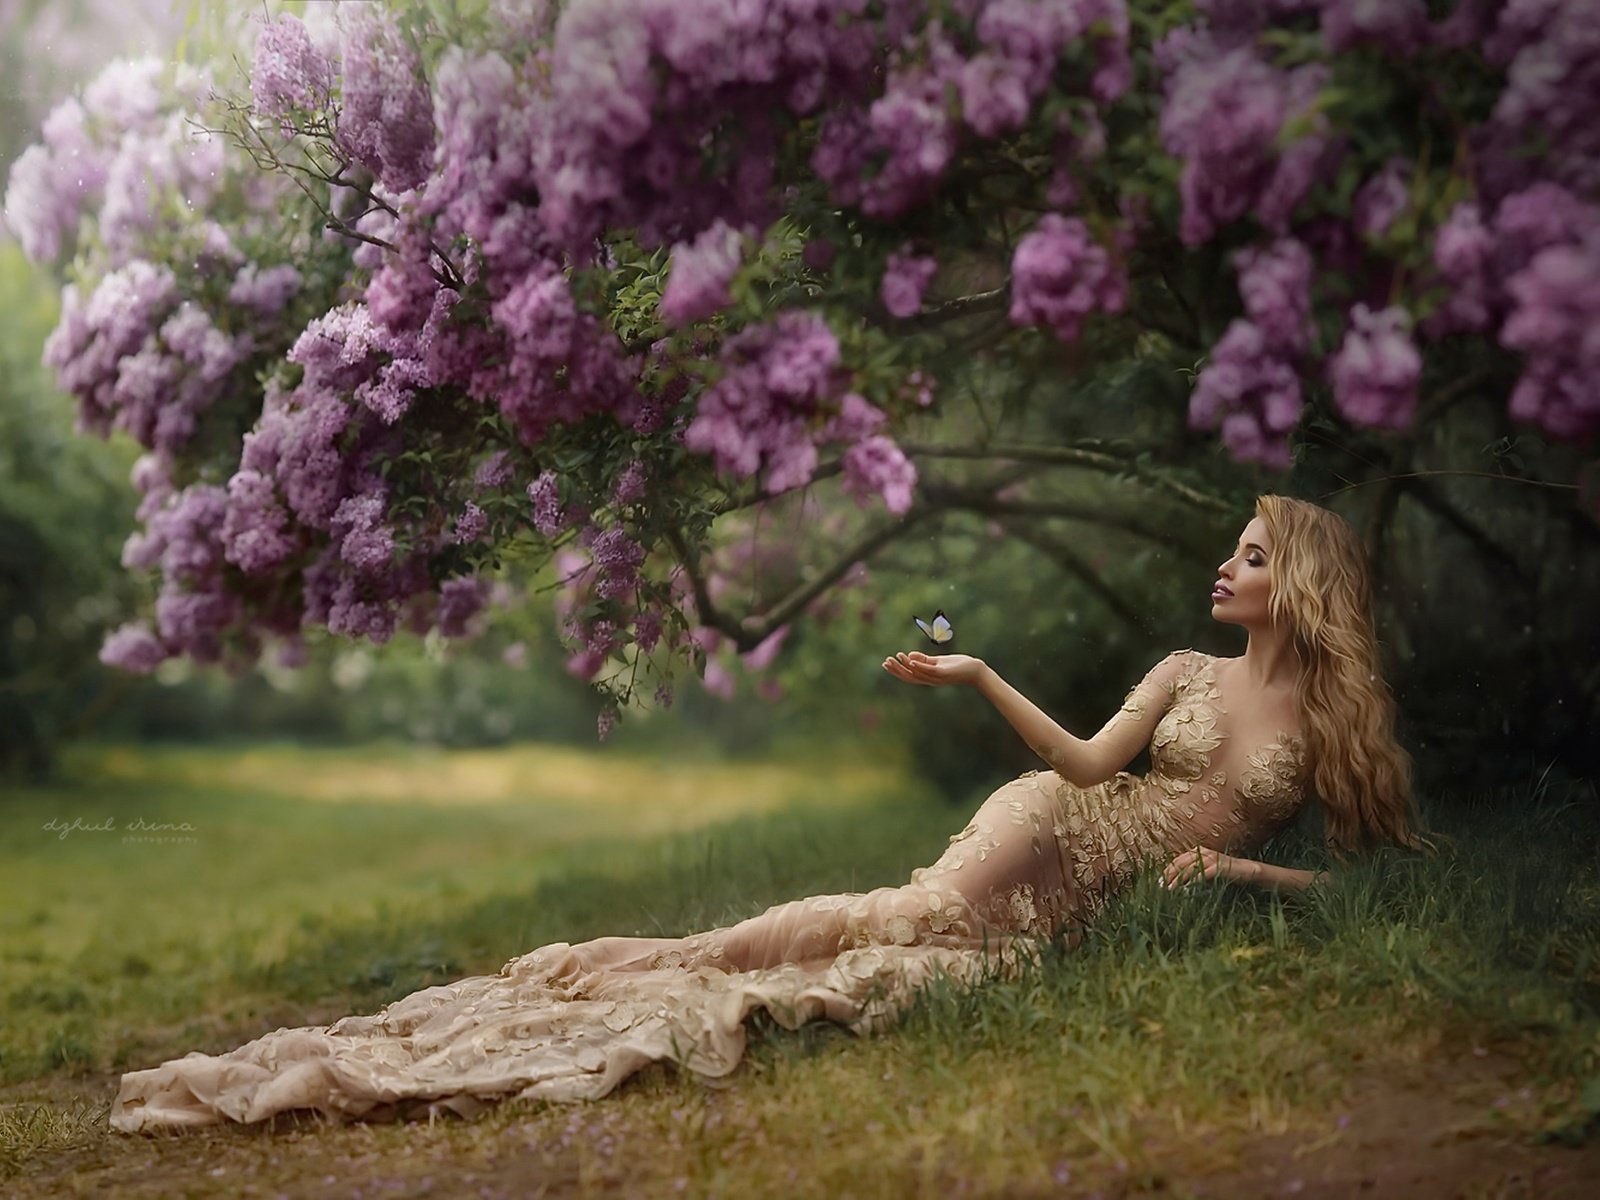 Фото голенькой девушки в цветущем саду